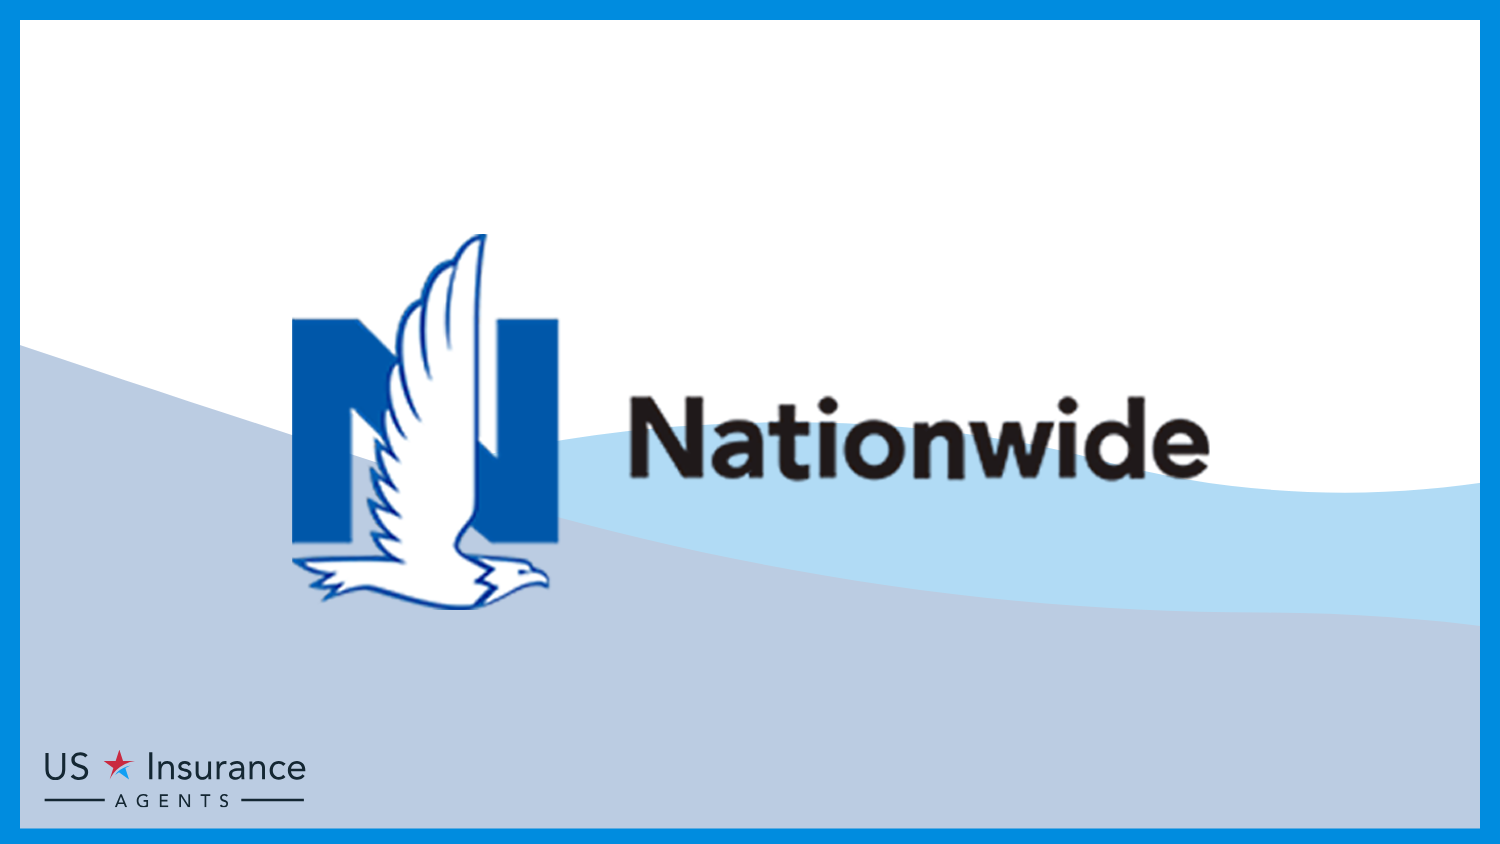 Nationwide: Best Life Insurance for Veterans